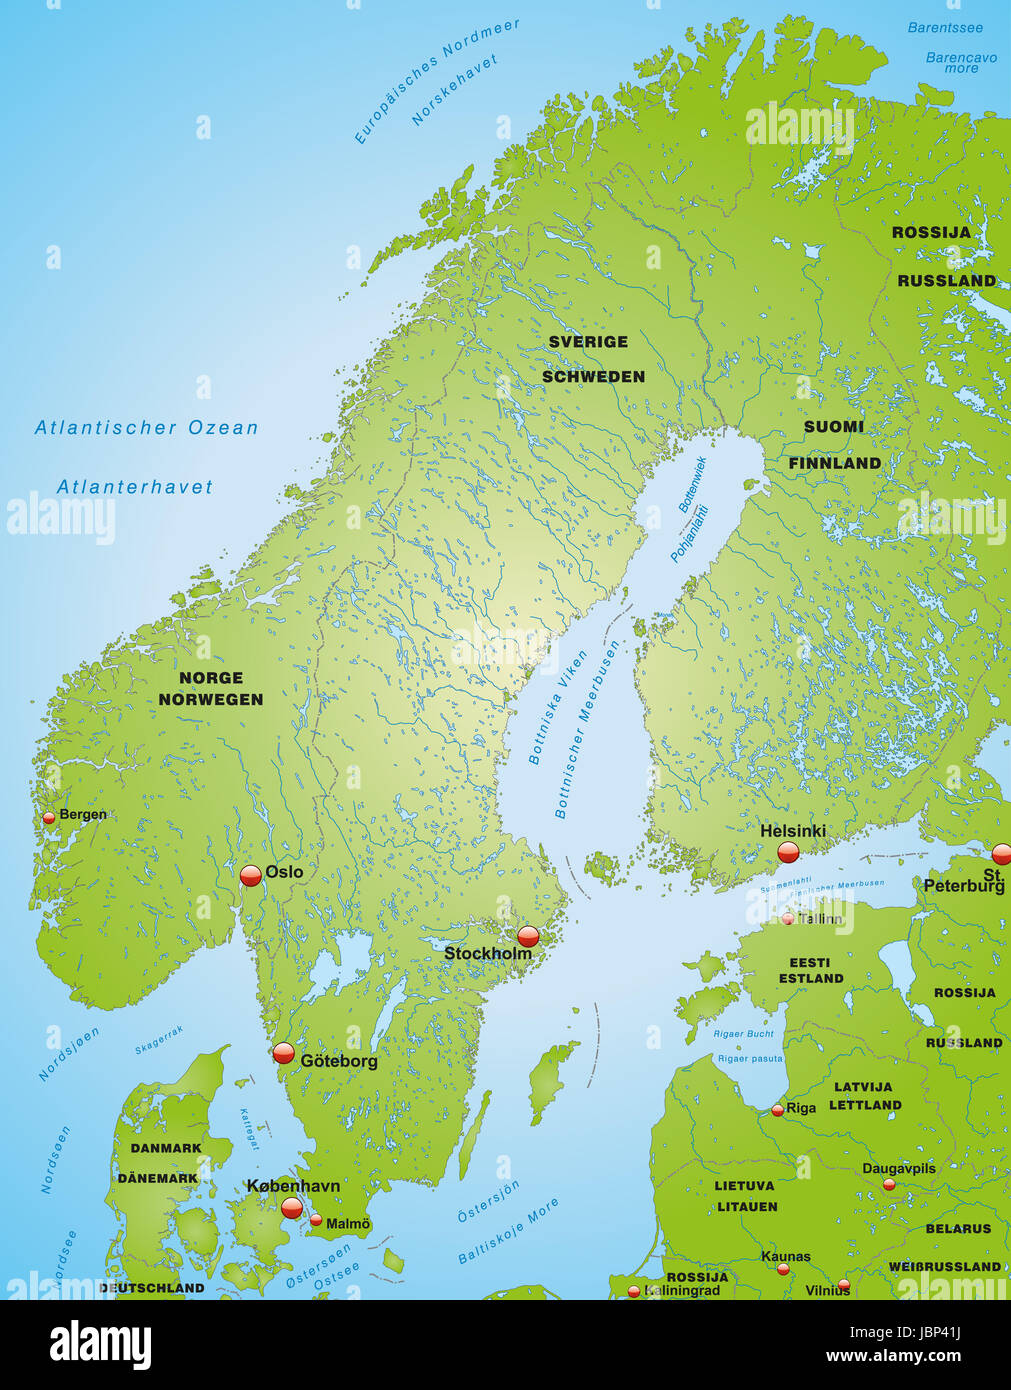 Karte von Skandinavien als Übersichtskarte in Grün Stock Photo